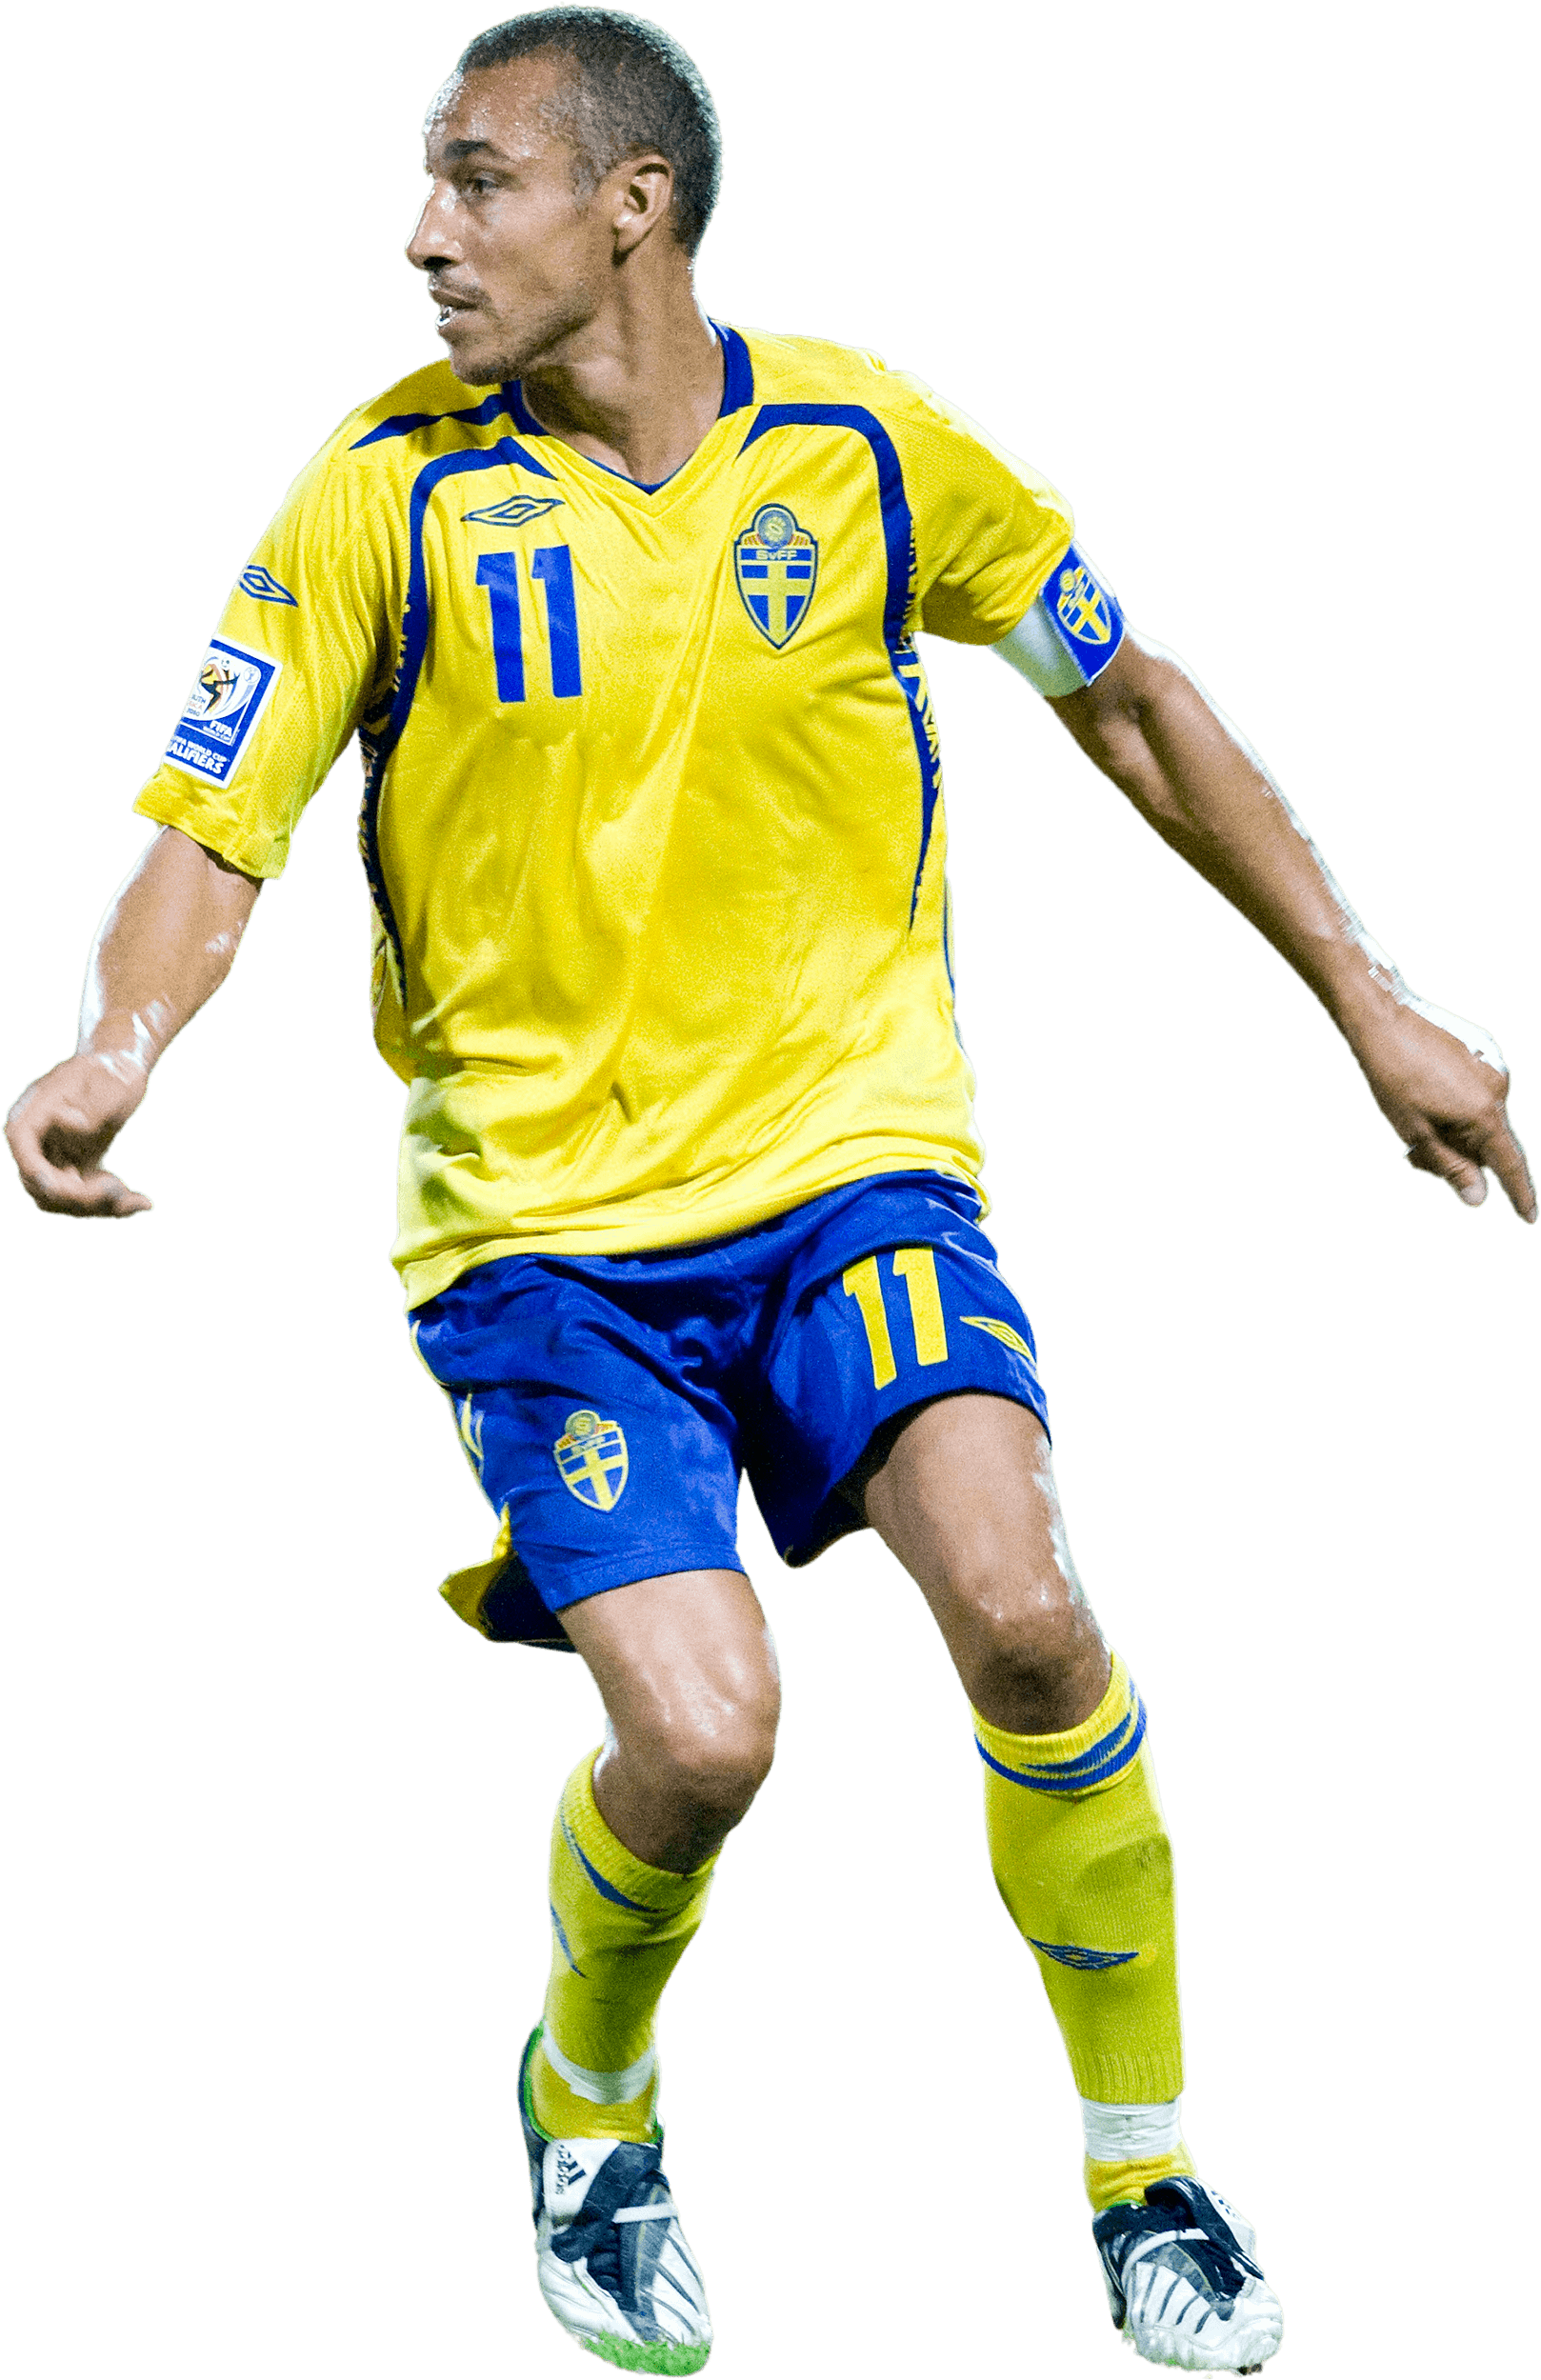 File:Henrik Larsson 2 (cropped).jpg - Wikipedia